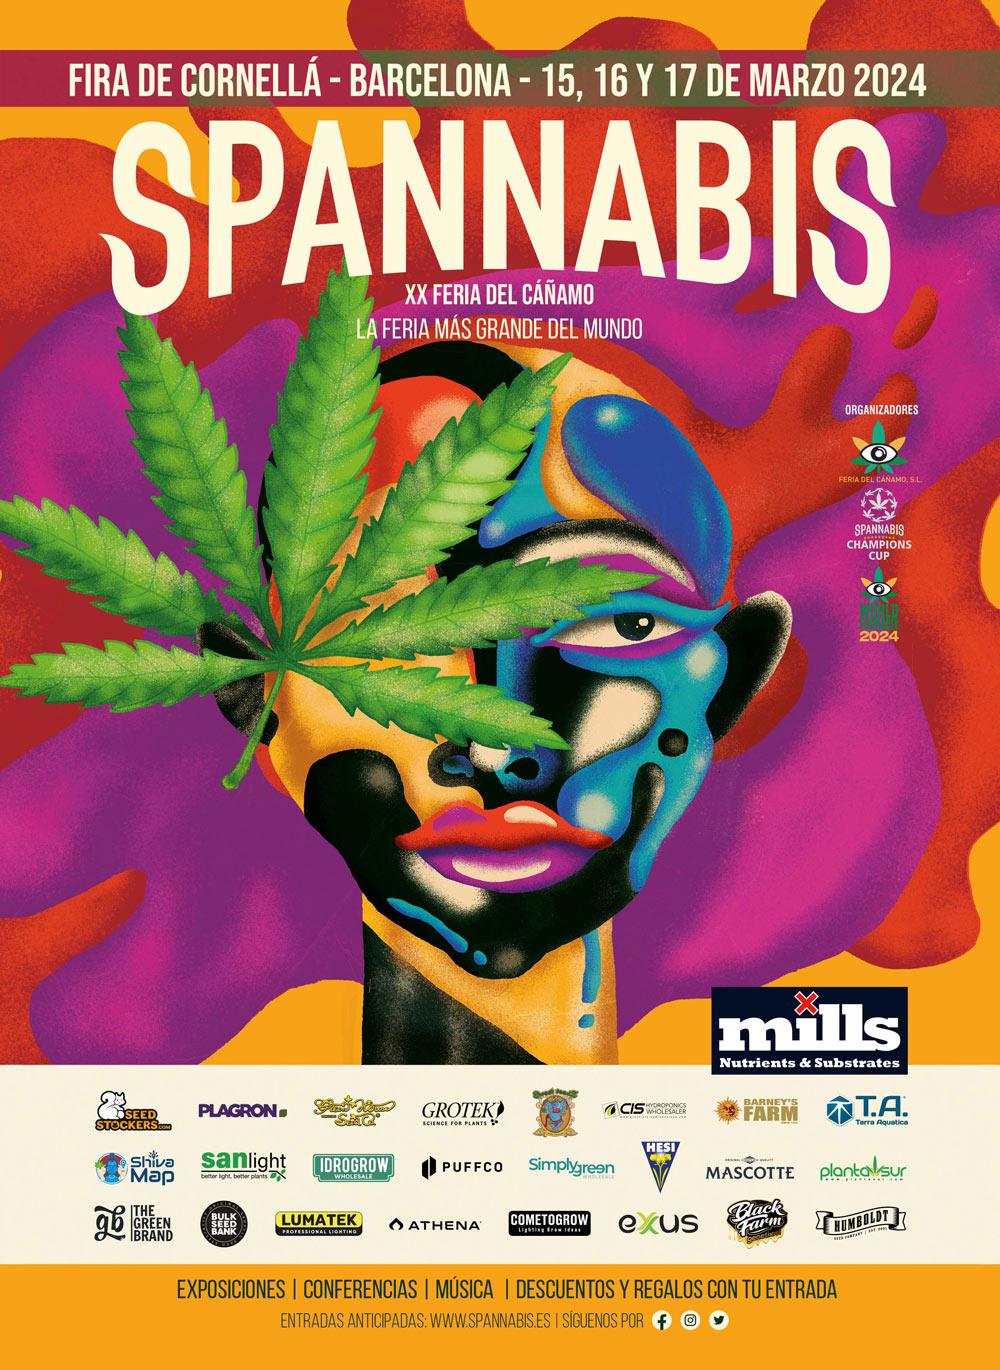 Spannabis Barcelona: Zentrum der Cannabiskultur